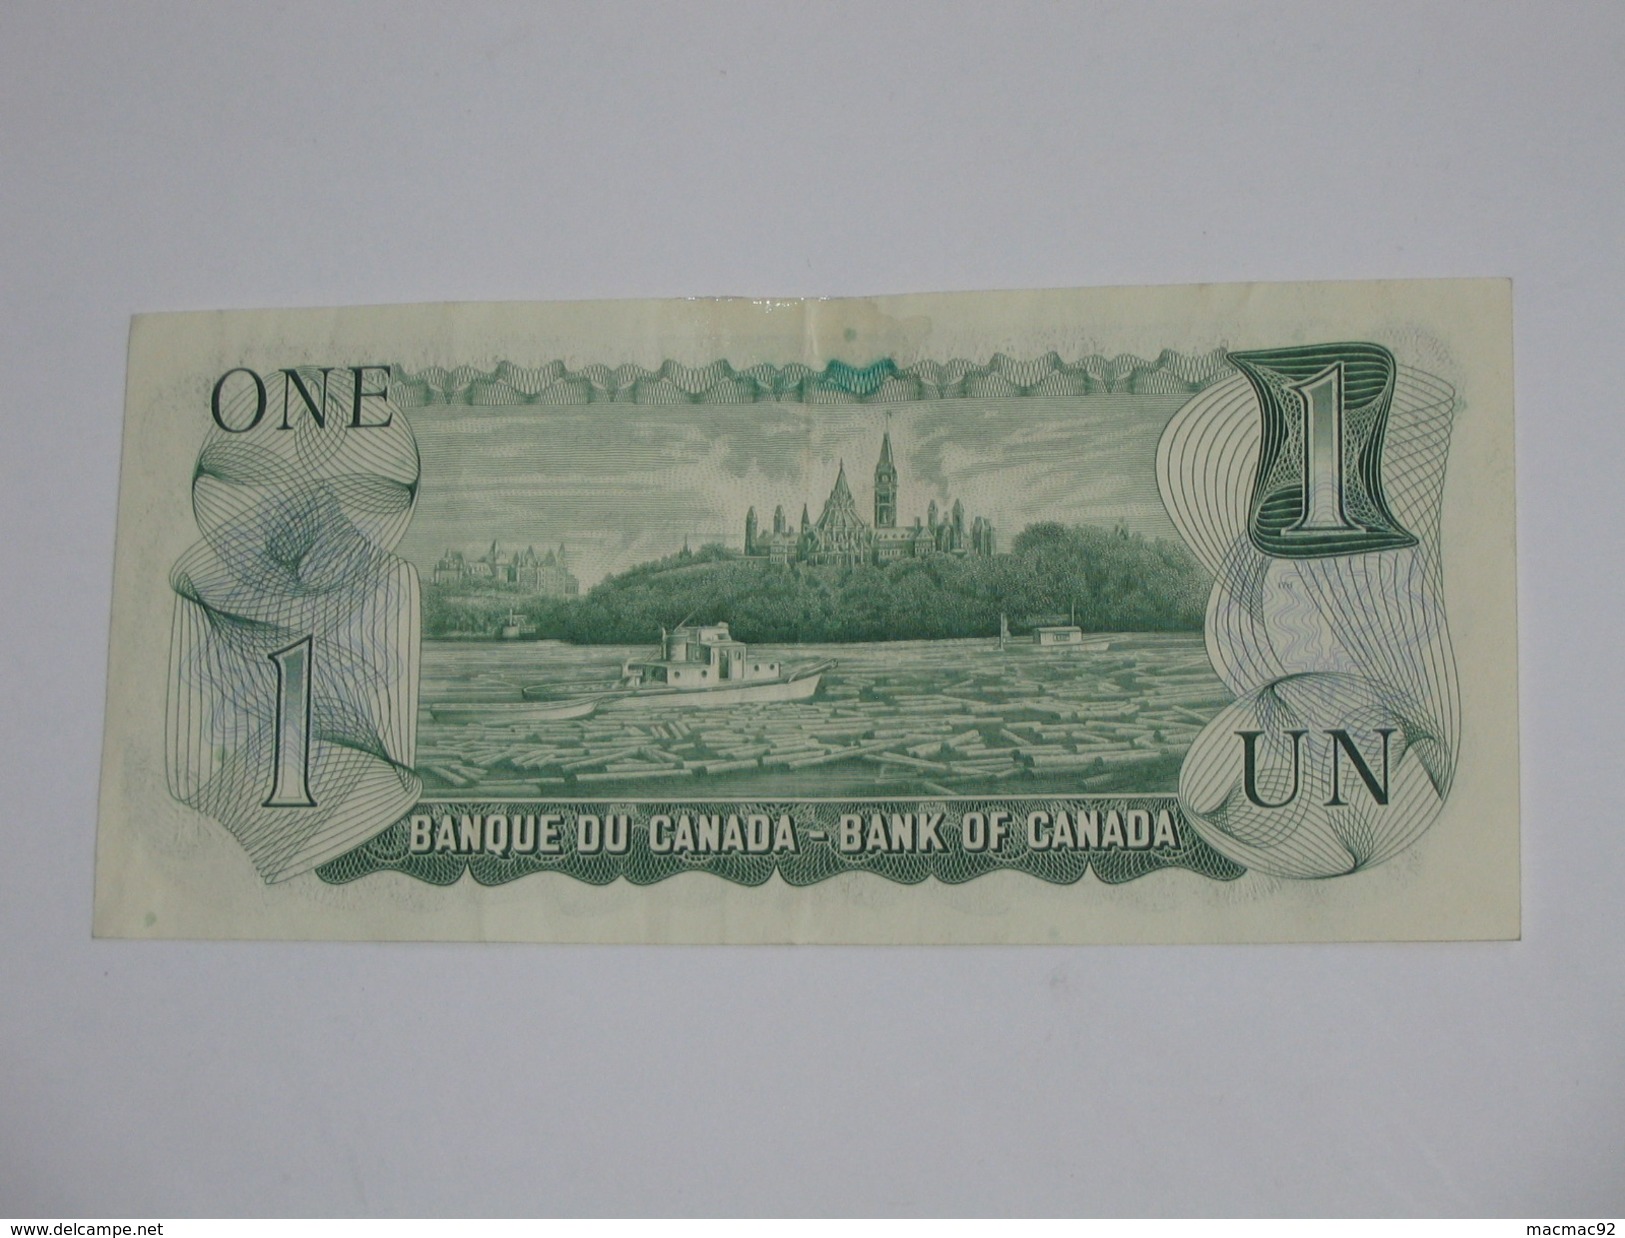 1 Dollar 1973 - One Dollars 1973 - Bank Of Canada **** EN ACHAT IMMEDIAT ***** - Canada